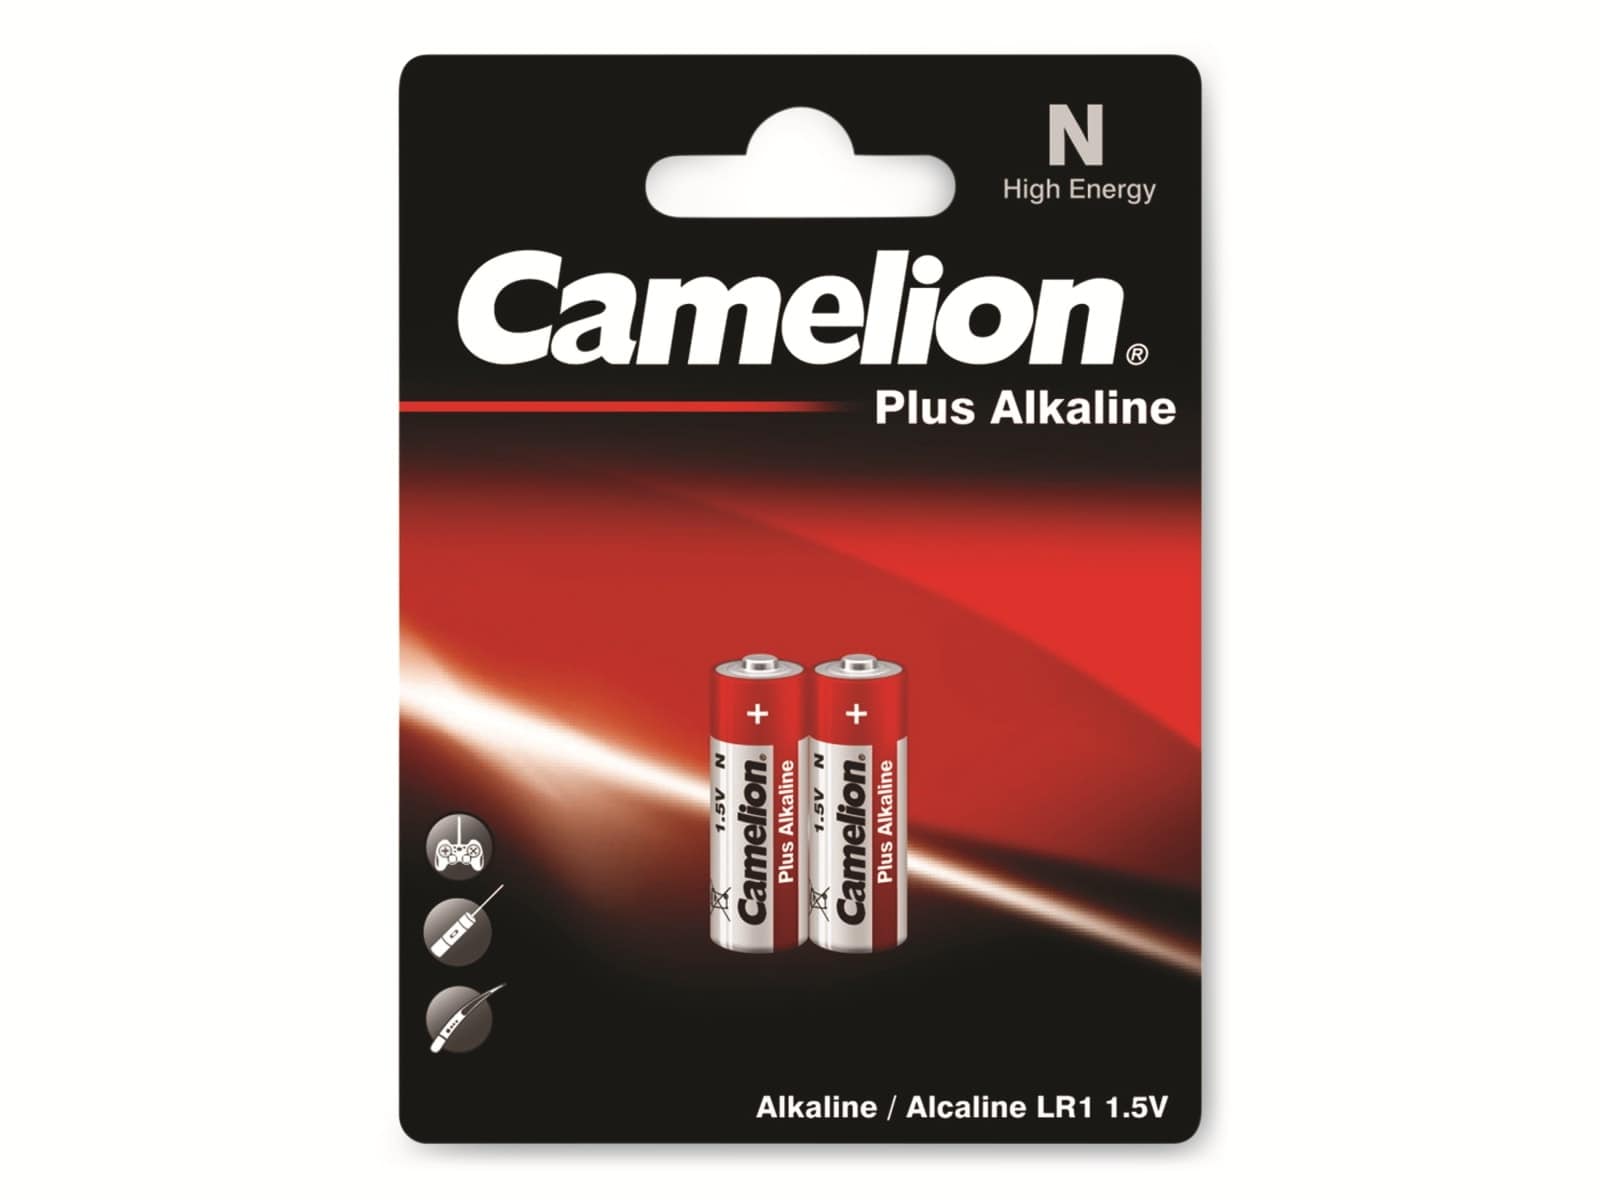 CAMELION Lady Batterie, Plus Alkaline, 2 Stück